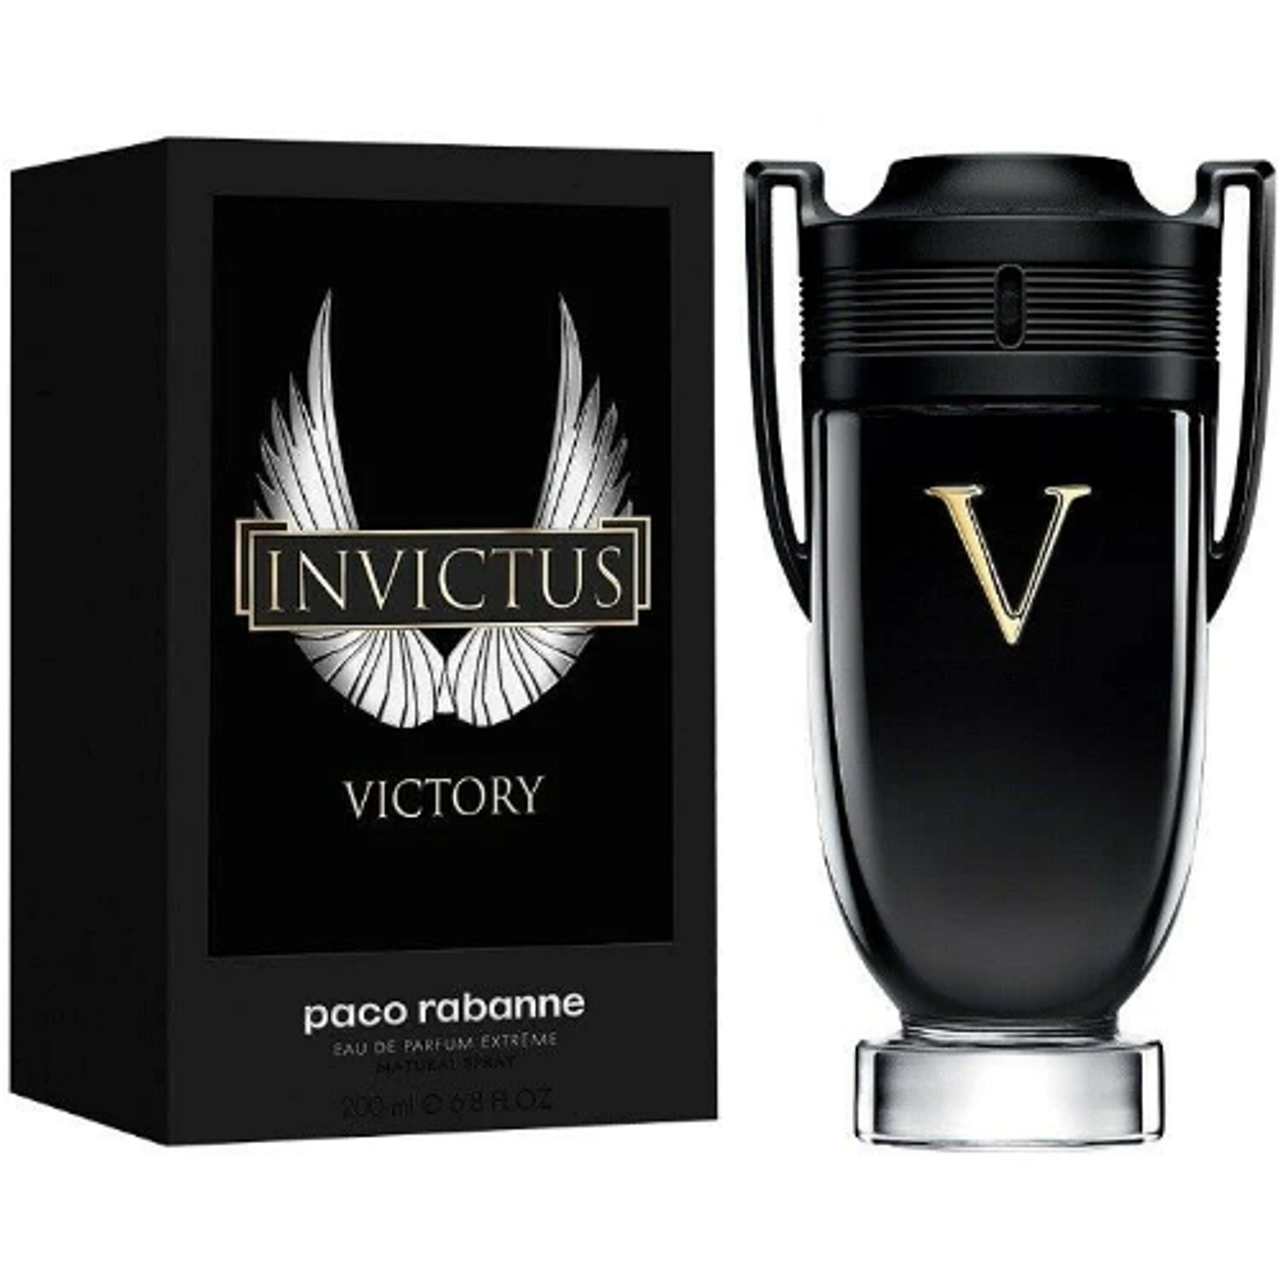 PACO RABANNE Men's Invictus Victory Eau de Parfum Spray, 3.4